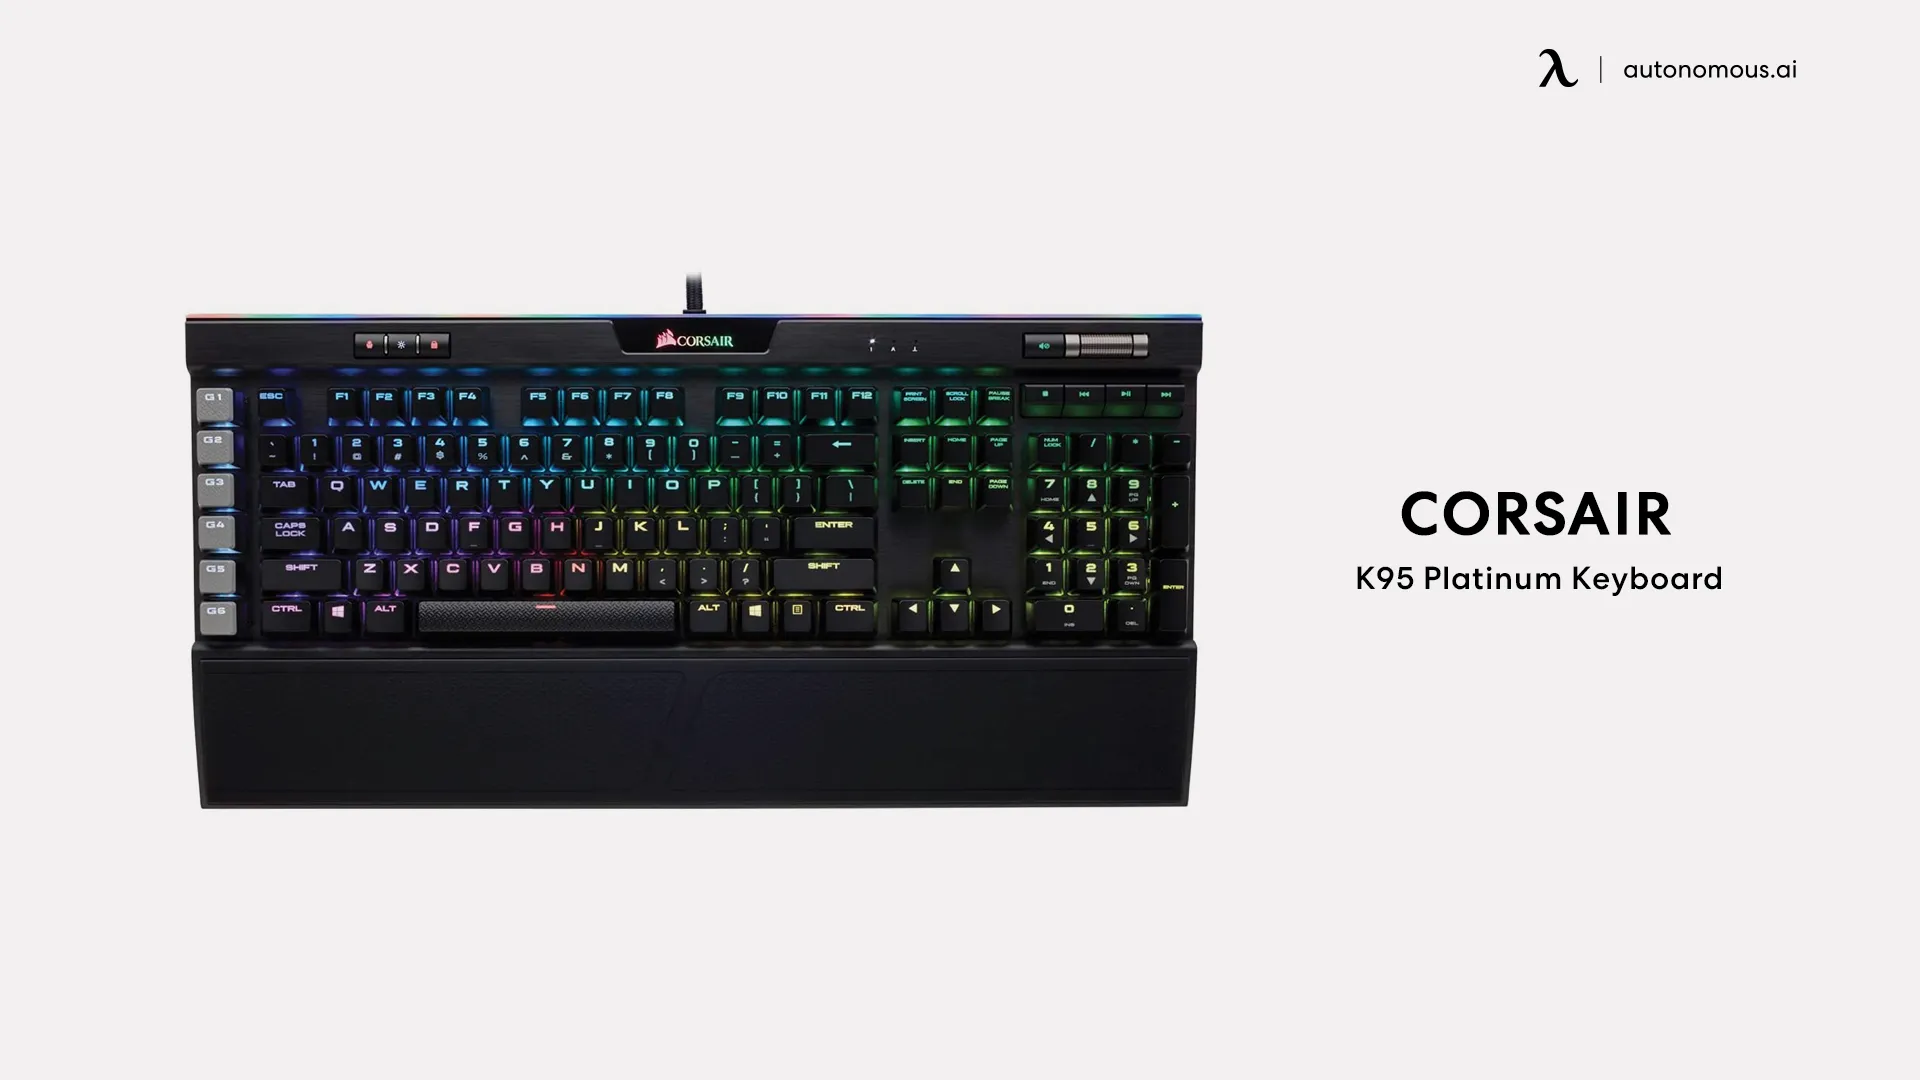 Corsair K95 Platinum gaming keyboard and tray